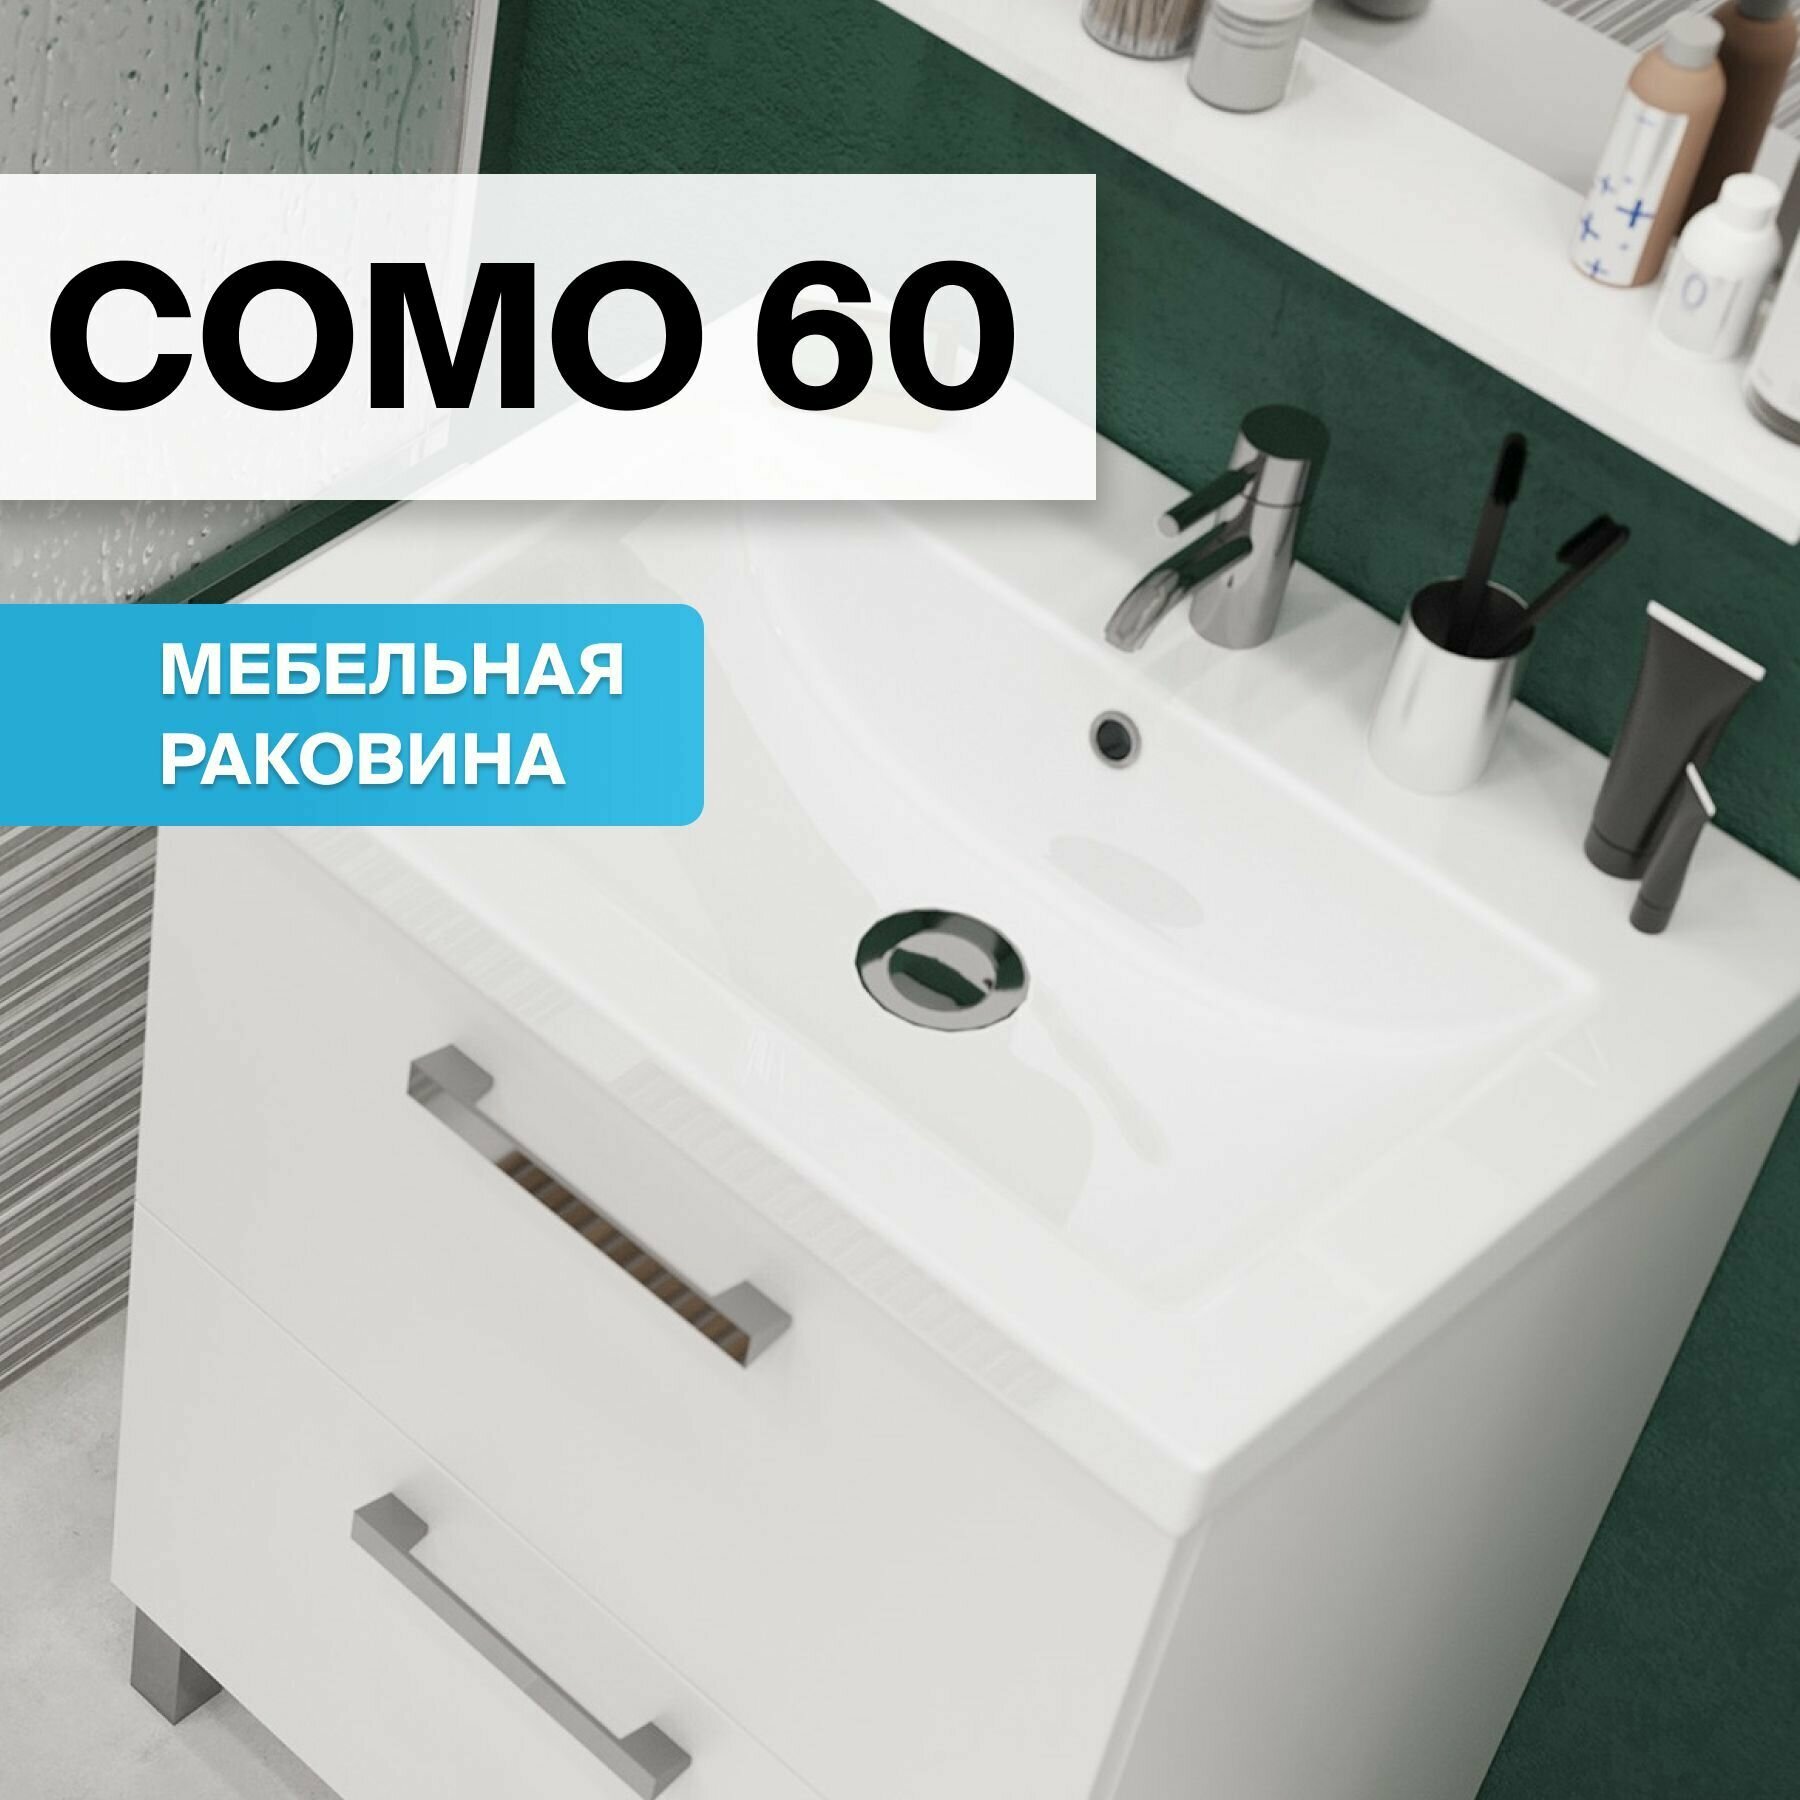 Раковина мебельная для ванной комнаты Cersanit COMO 60 белая, Гарантия 10 лет